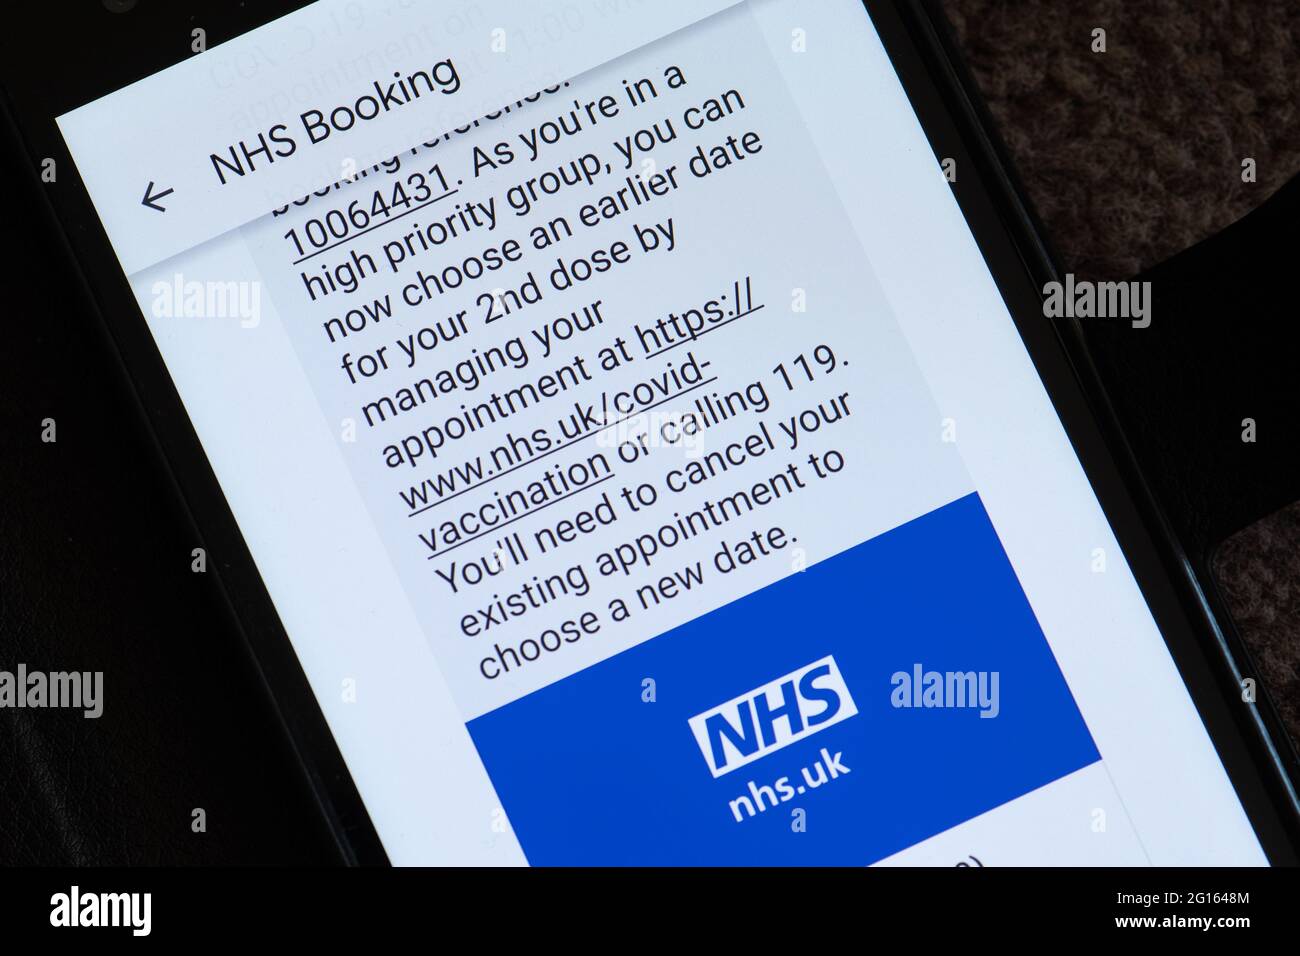 Textnachricht des NHS, in der empfohlen wird, einen früheren Termin für die 2. Kovidische Impfung wie in der Gruppe mit hoher Priorität (über 50 Jahre alt) zu buchen, Großbritannien, Juni 2021 Stockfoto